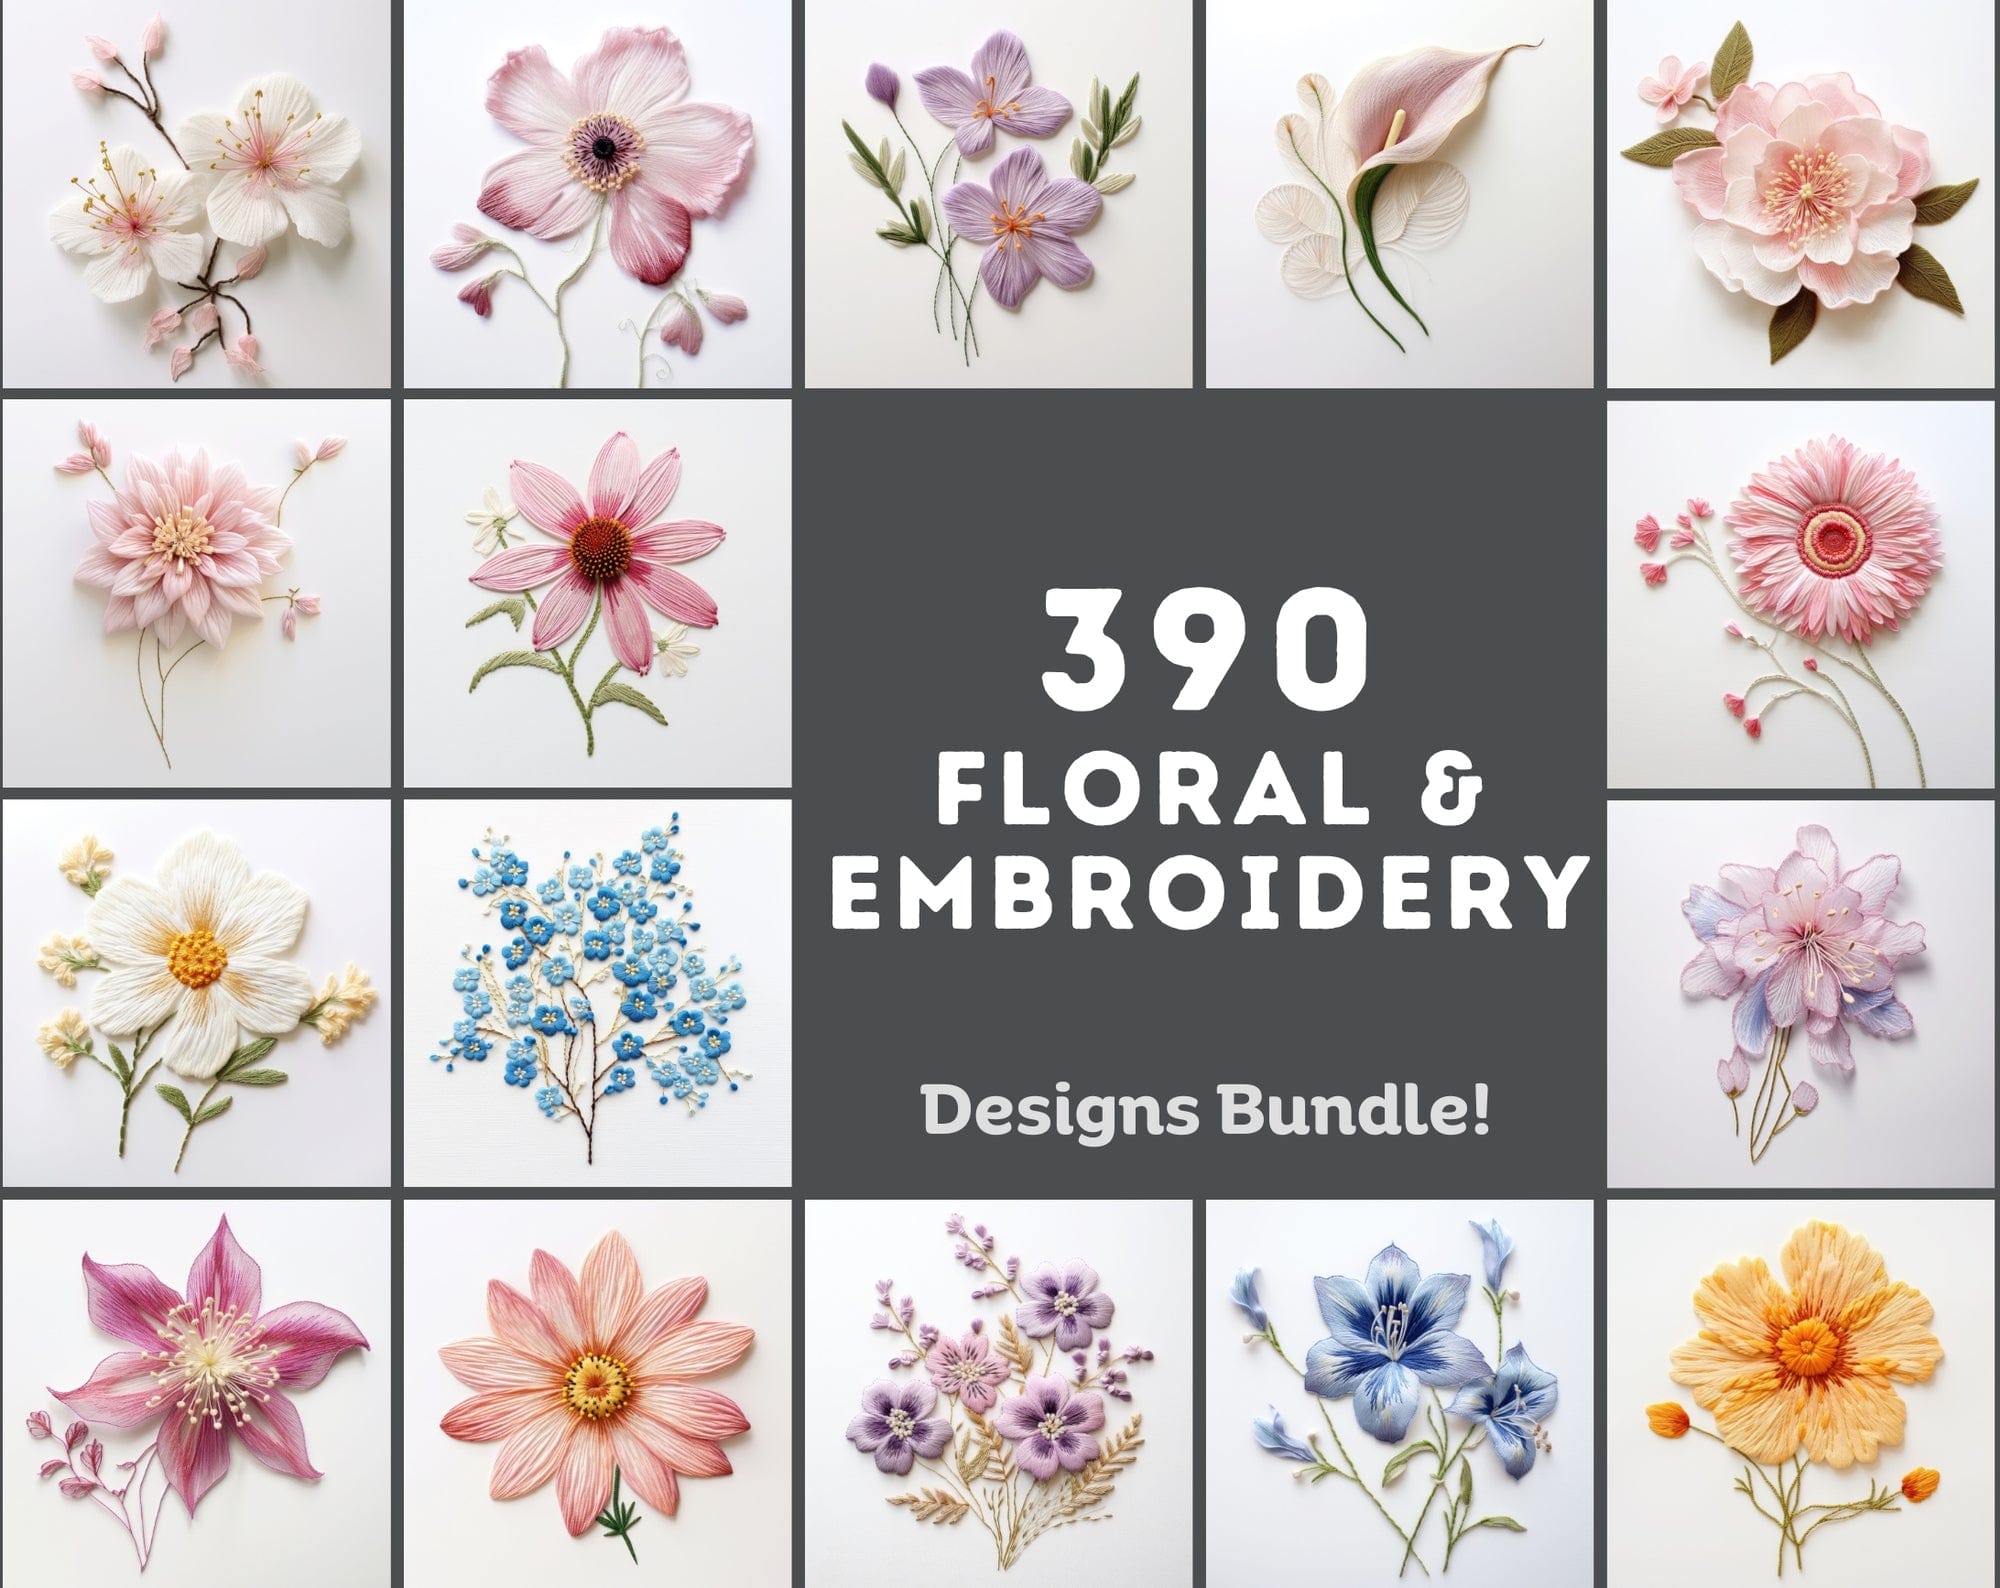 390 Floral & Embroidery Designs Bundle Sumobundle